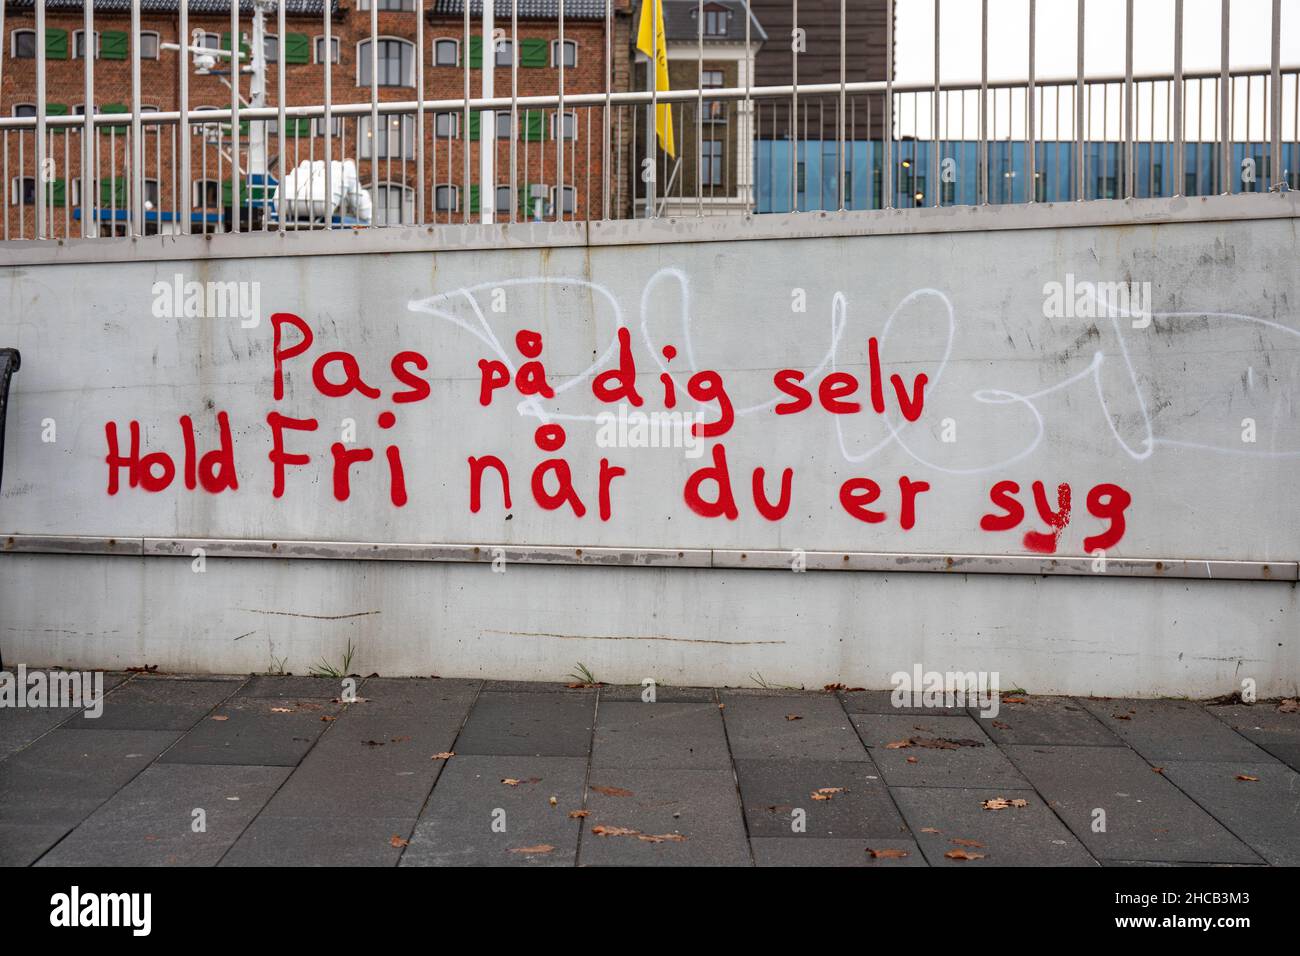 Pas på dig selv. Hold fri når du er syg. Graffiti in Gammelholm district of Copenhagen, Denmark. Stock Photo